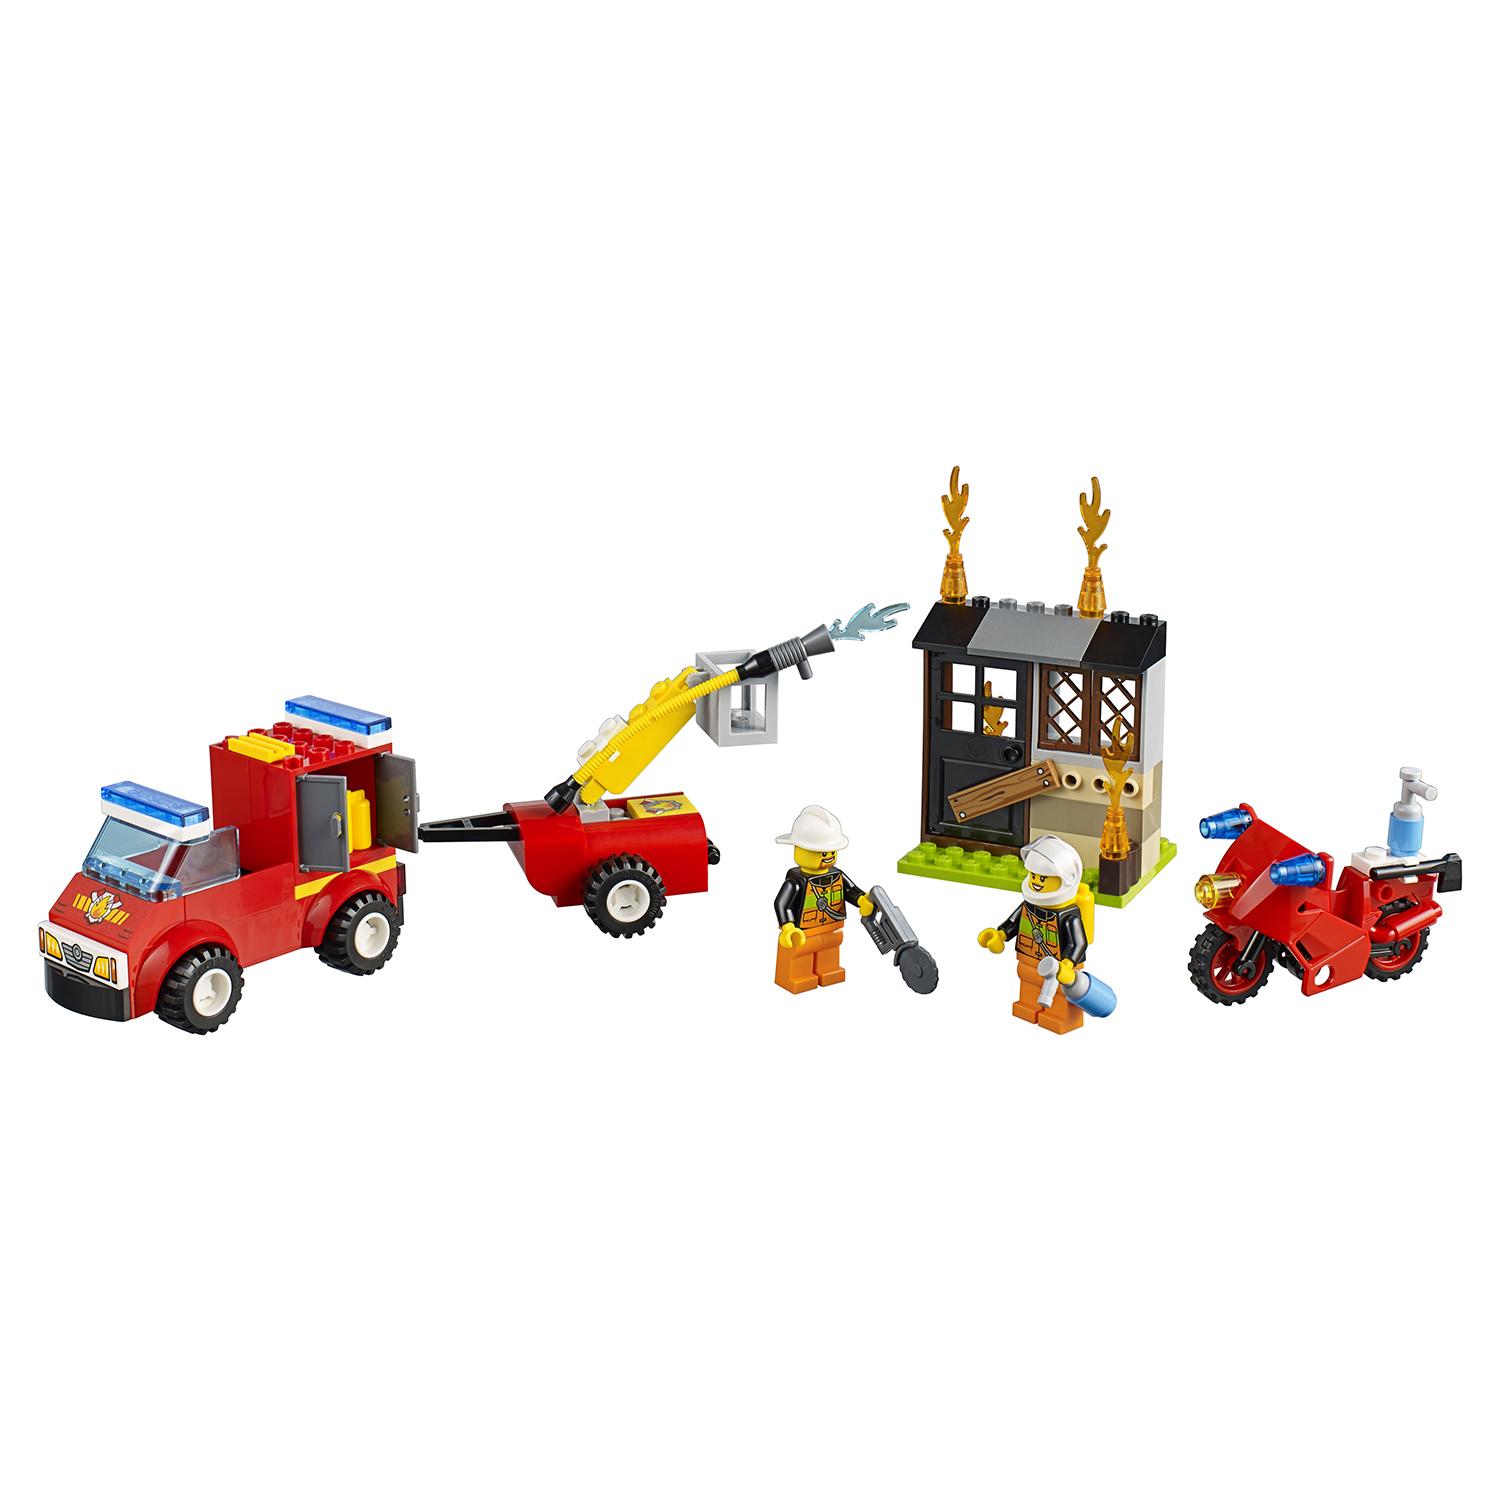 Lego Juniors 10740 Чемоданчик Пожарная команда